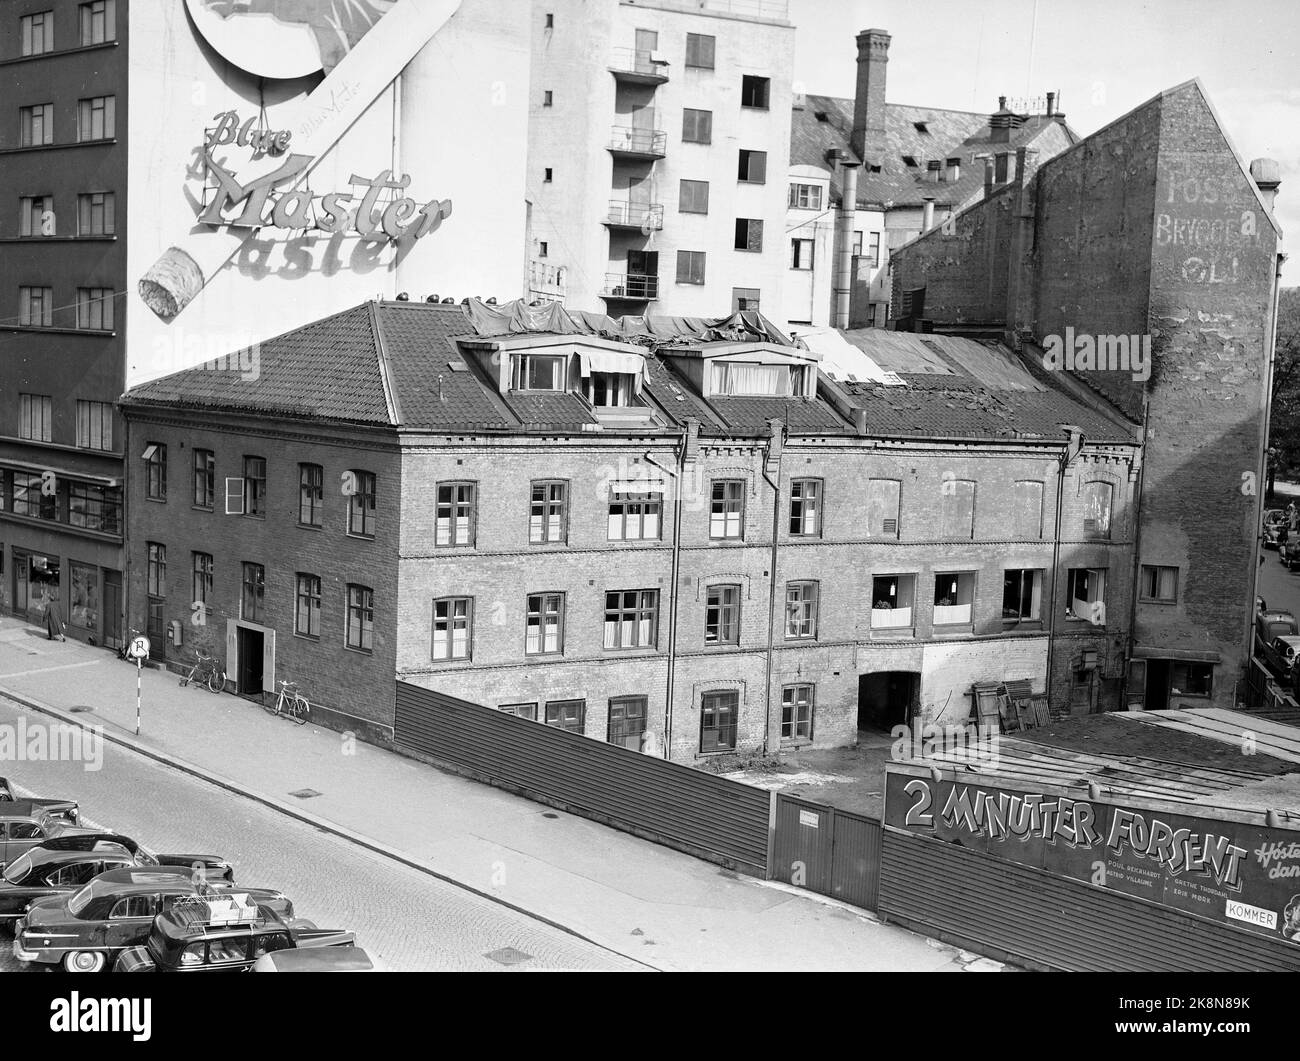 Oslo 19520902. La vecchia Broadcasting House a Roald Amundsensgate. In background la pubblicità per le sigarette Blue Master. Foto: Archivio NTB / NTB Foto Stock